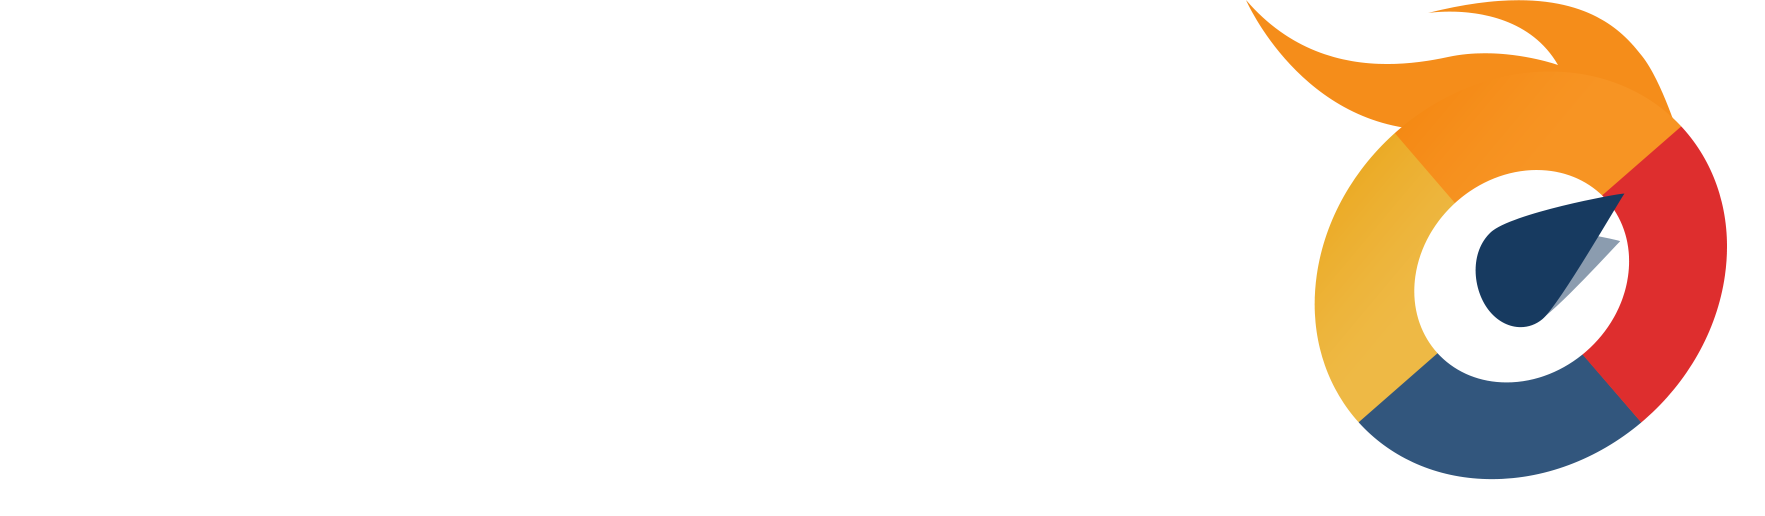 Turbo Web Hosting White Text Icon | Turbo Logo | A2 Hosting | A2 Hosting